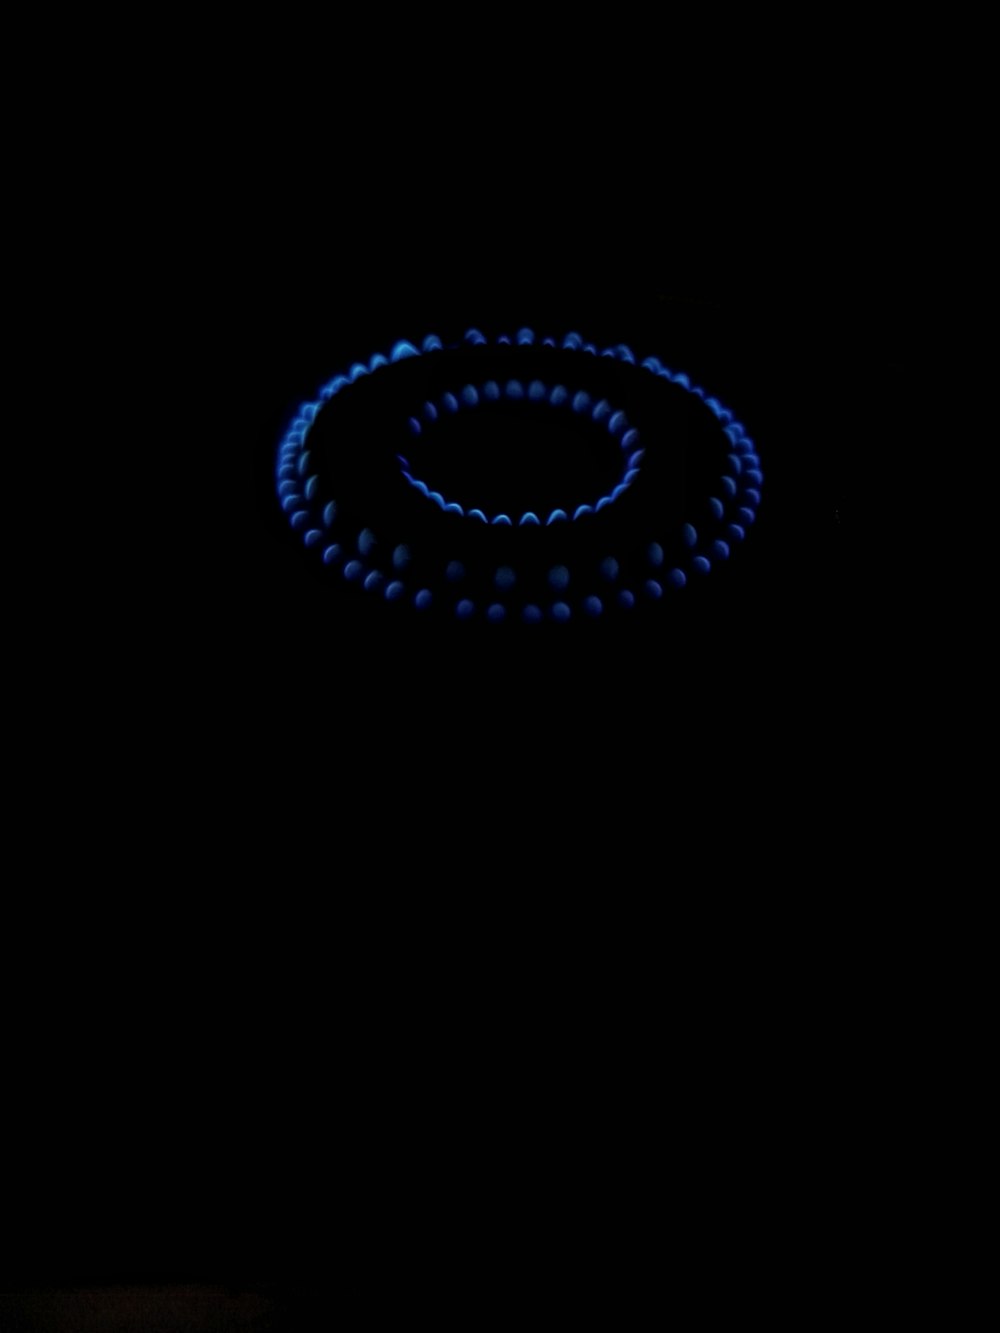 um fundo preto com um anel azul no meio